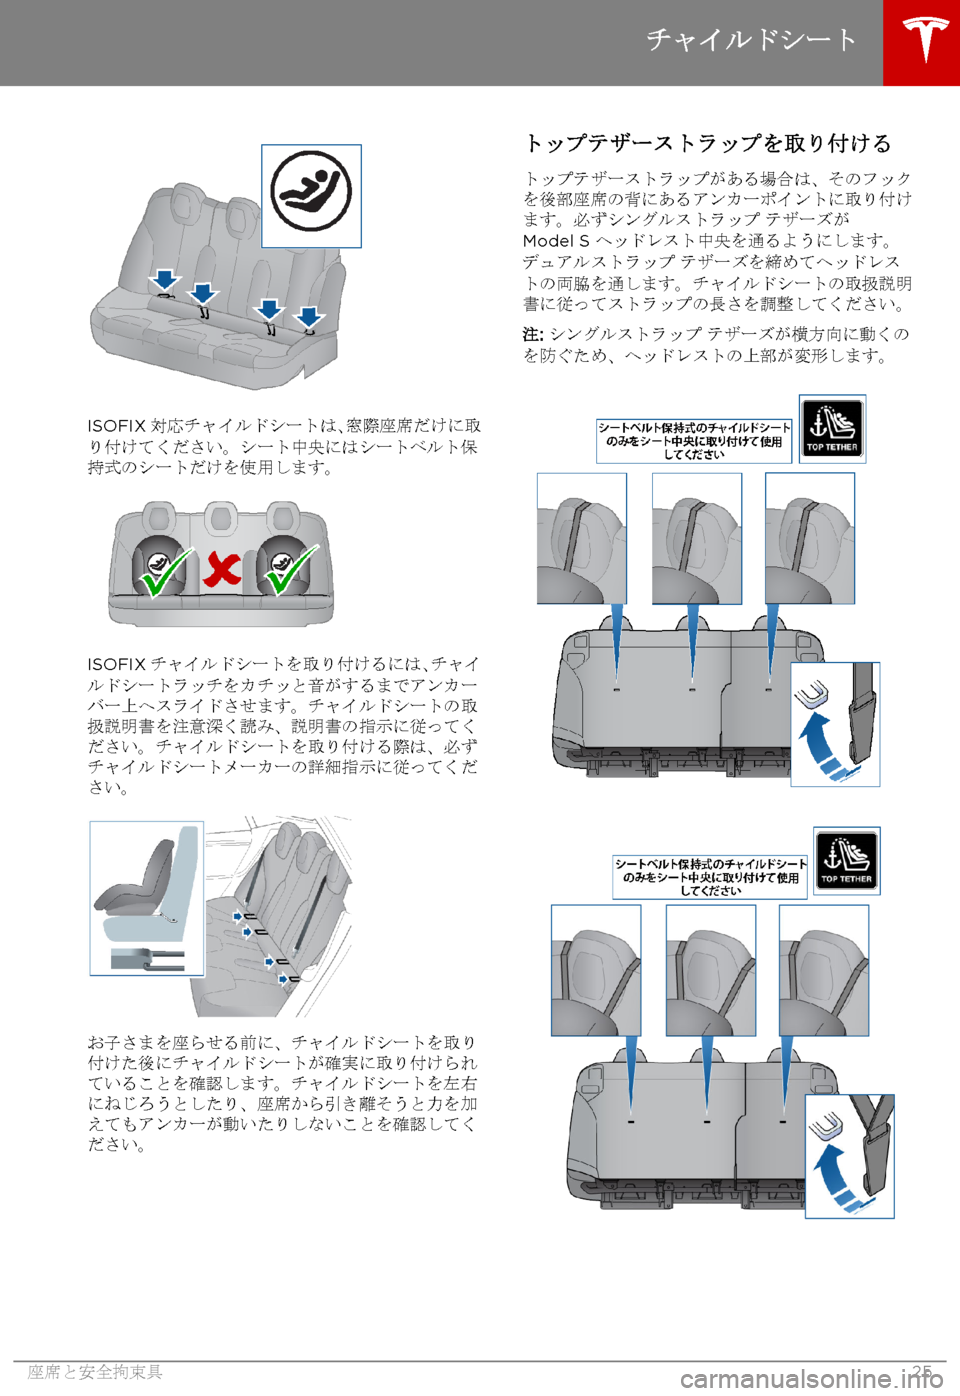 TESLA MODEL S 2015  取扱説明書 (in Japanese)  ISOFIX対応チャイルドシートは、窓際座席だけに取り付けてください。シート中央にはシートベルト保持式のシートだけを使用します。
ISOFIXチャイル�